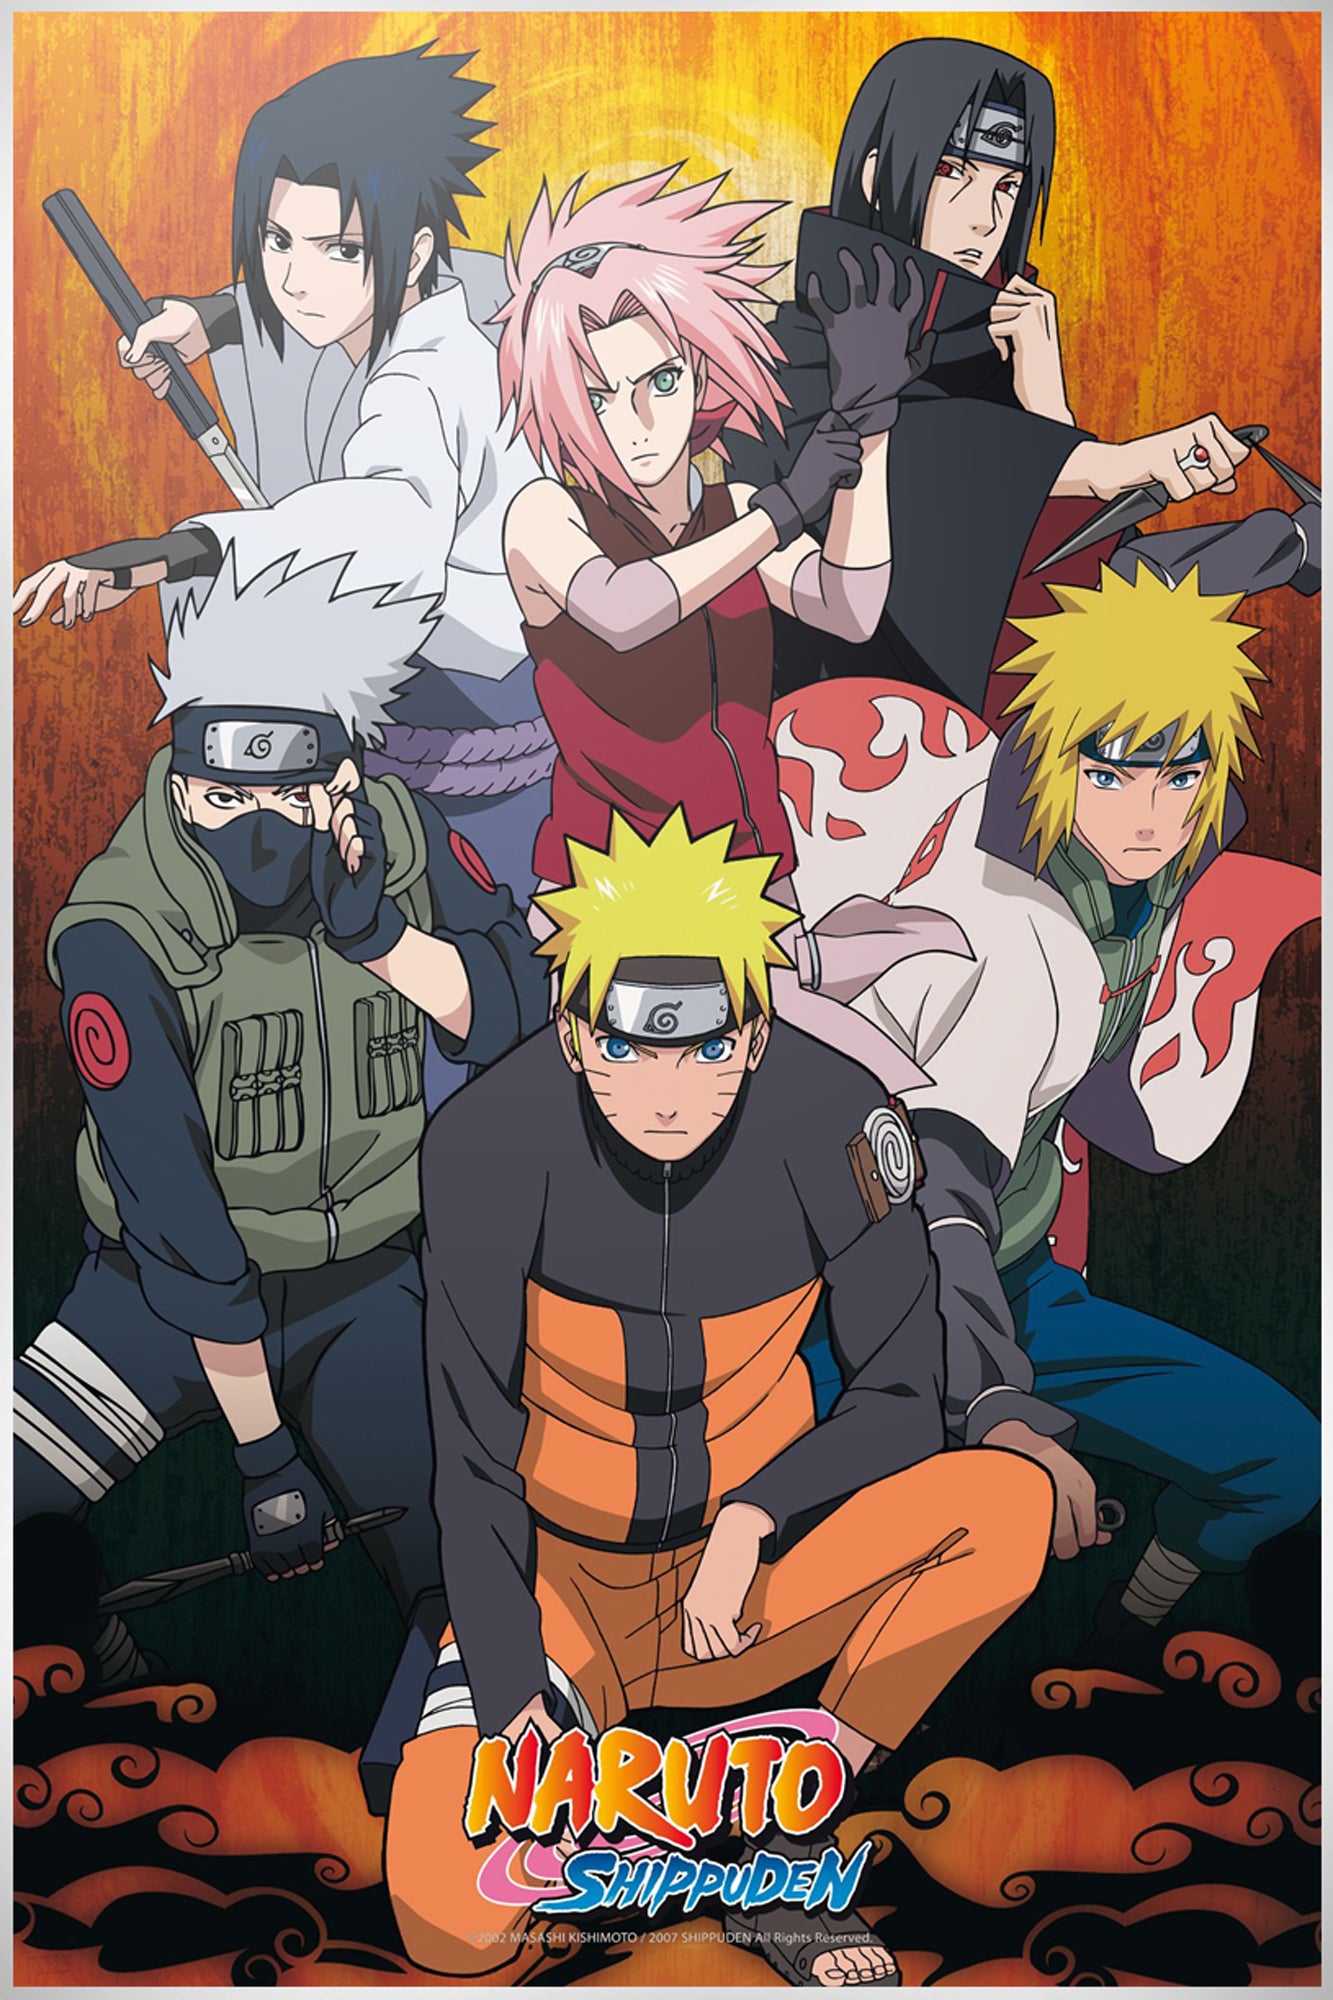 Naruto Shippuden Group Maxi Poster